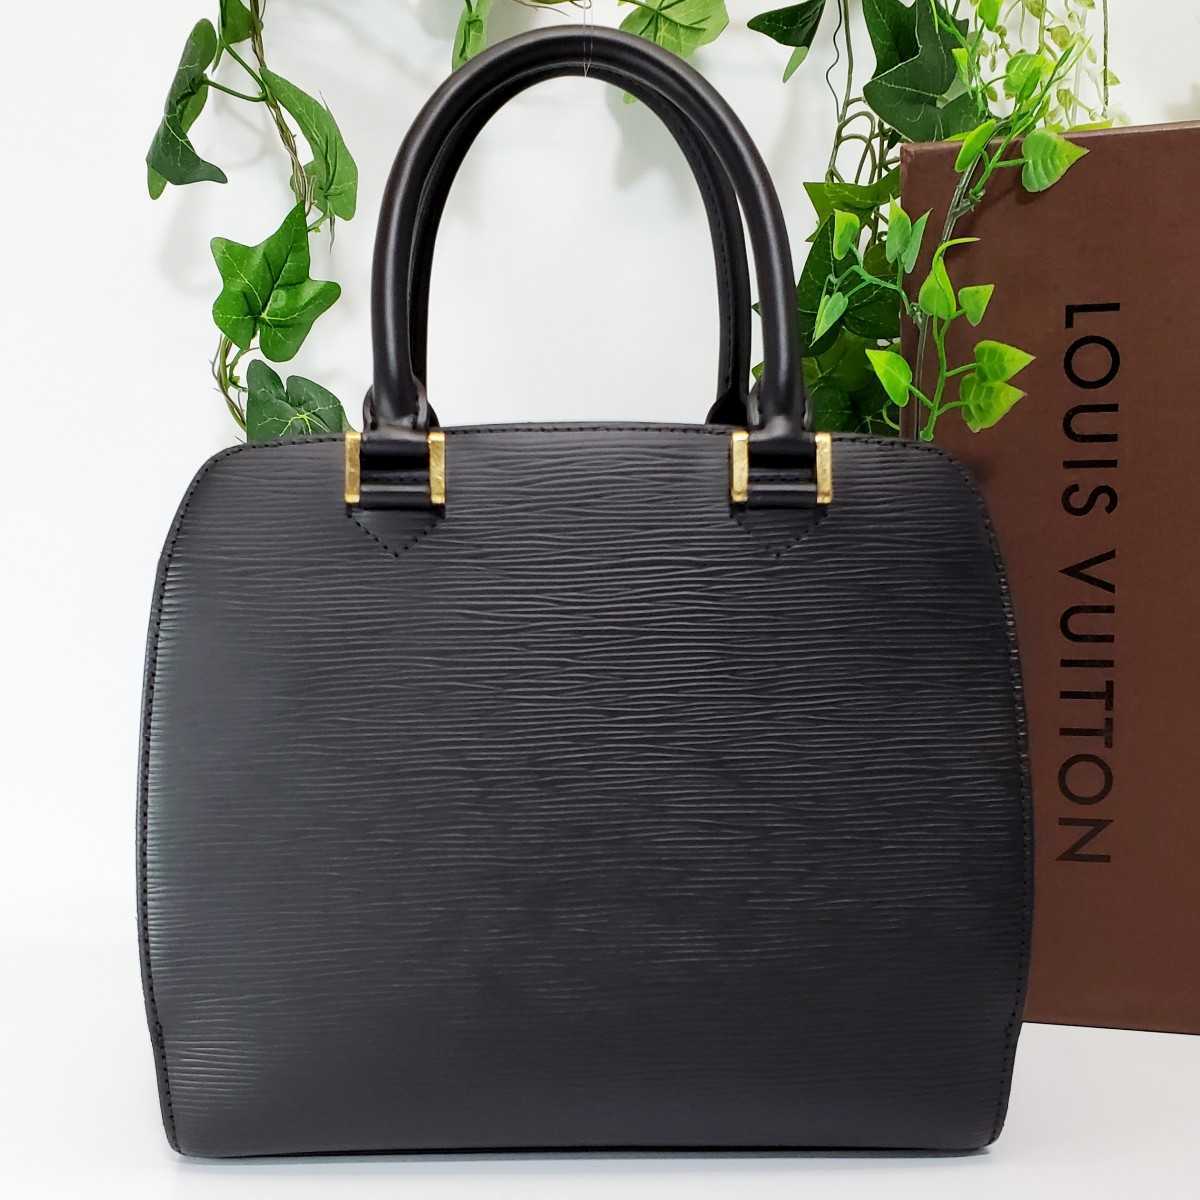 値段交渉受け付け エピ VUITTON LOUIS ポンヌフ 美品 ブラック ハンドバッグ